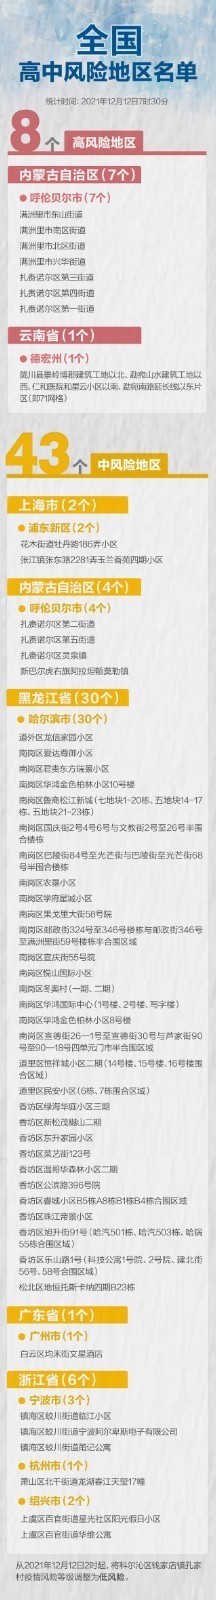 北京12月11日无新增新冠肺炎确诊病例 全国现有高风险地区8个